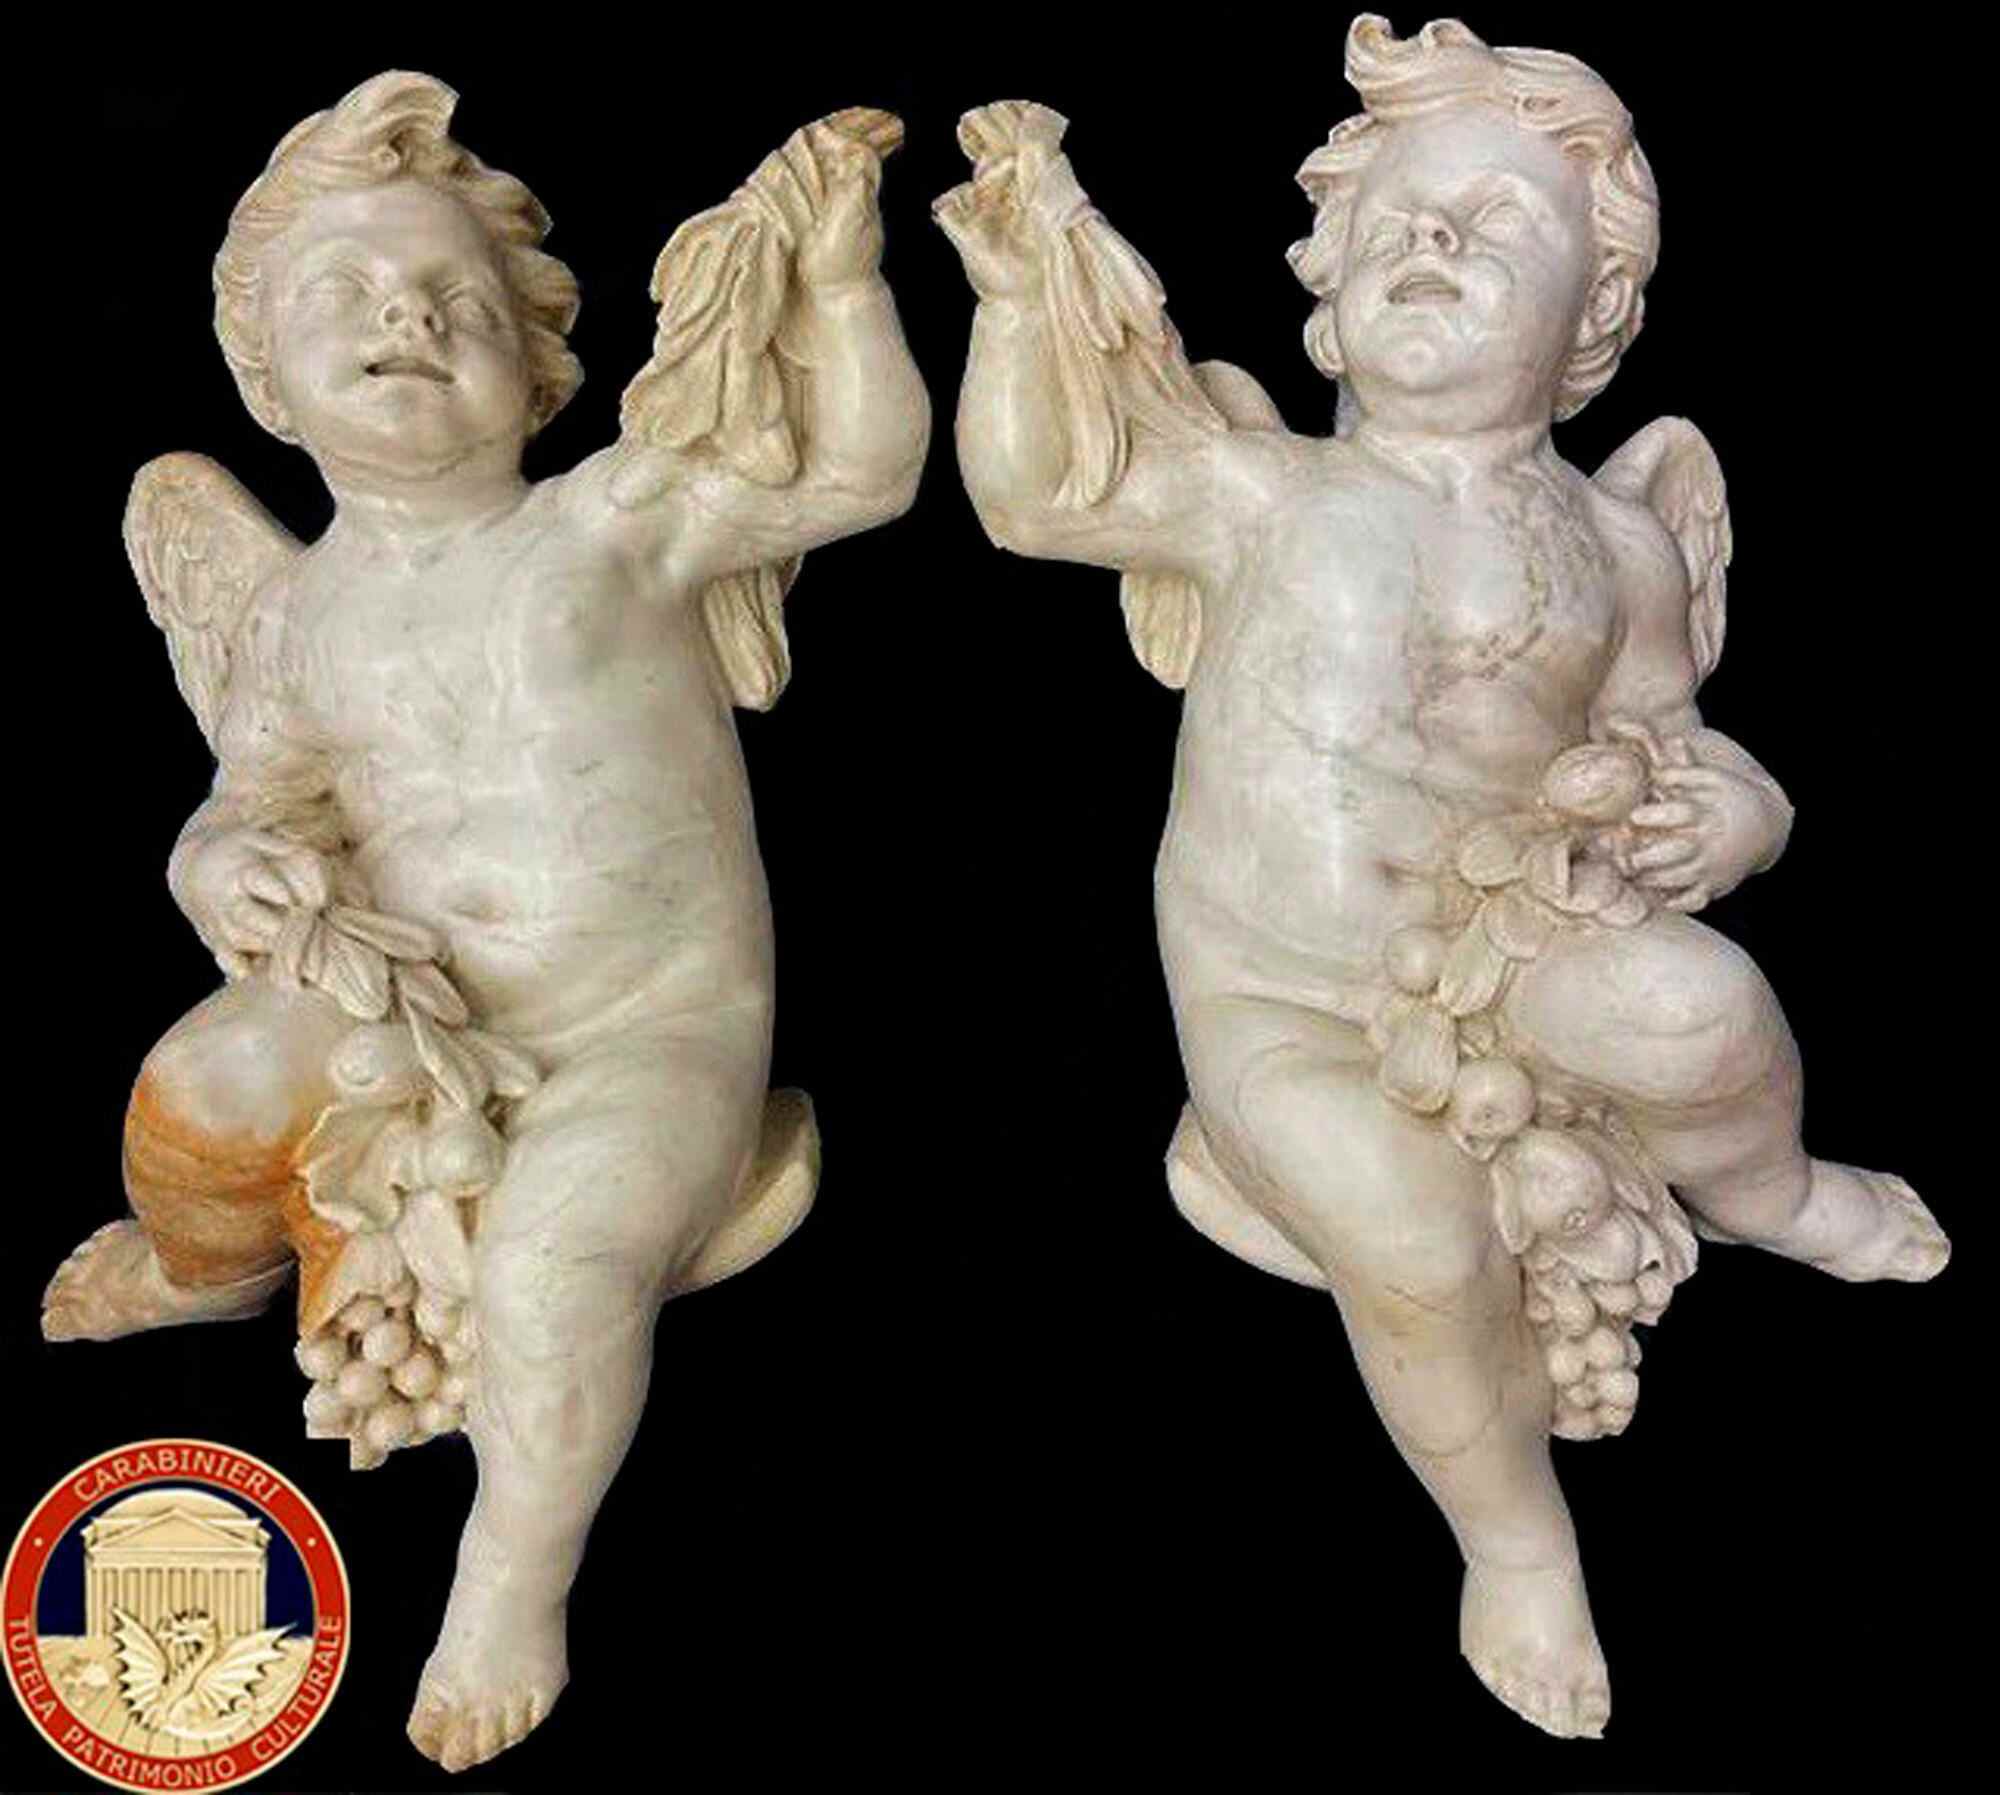 Auf diesem undatierten Bild sind zwei Marmorstatuen von Engeln zu sehen.  Ein britischer Kunstsammler, der die Marmorengel aus dem 17. Jahrhundert in einem Antiquitätenladen gekauft hat, hat sie zurückgegeben?  an die italienische Kunstpolizei.